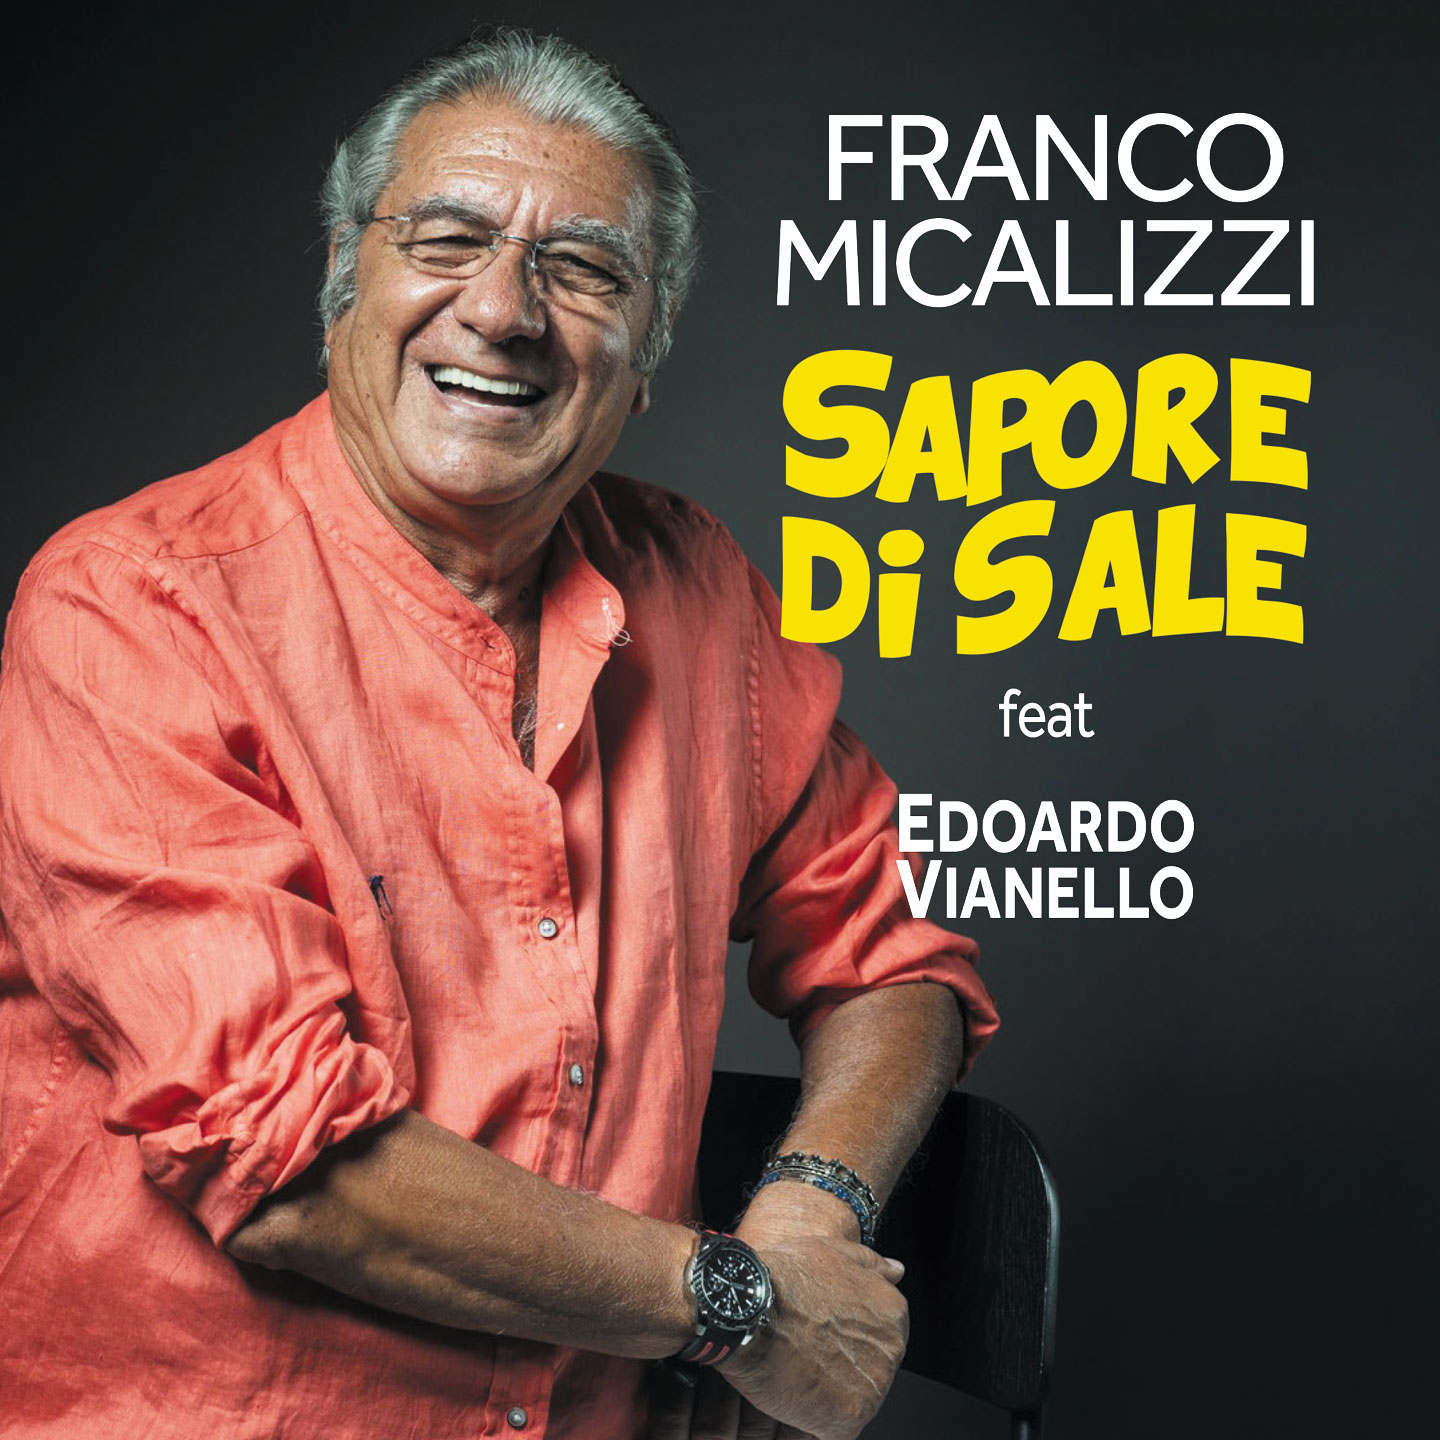 Sbarca in radio “Sapore di sale” il brano riarrangiato da Franco Micalizzi con il feat. Edoardo Vianello